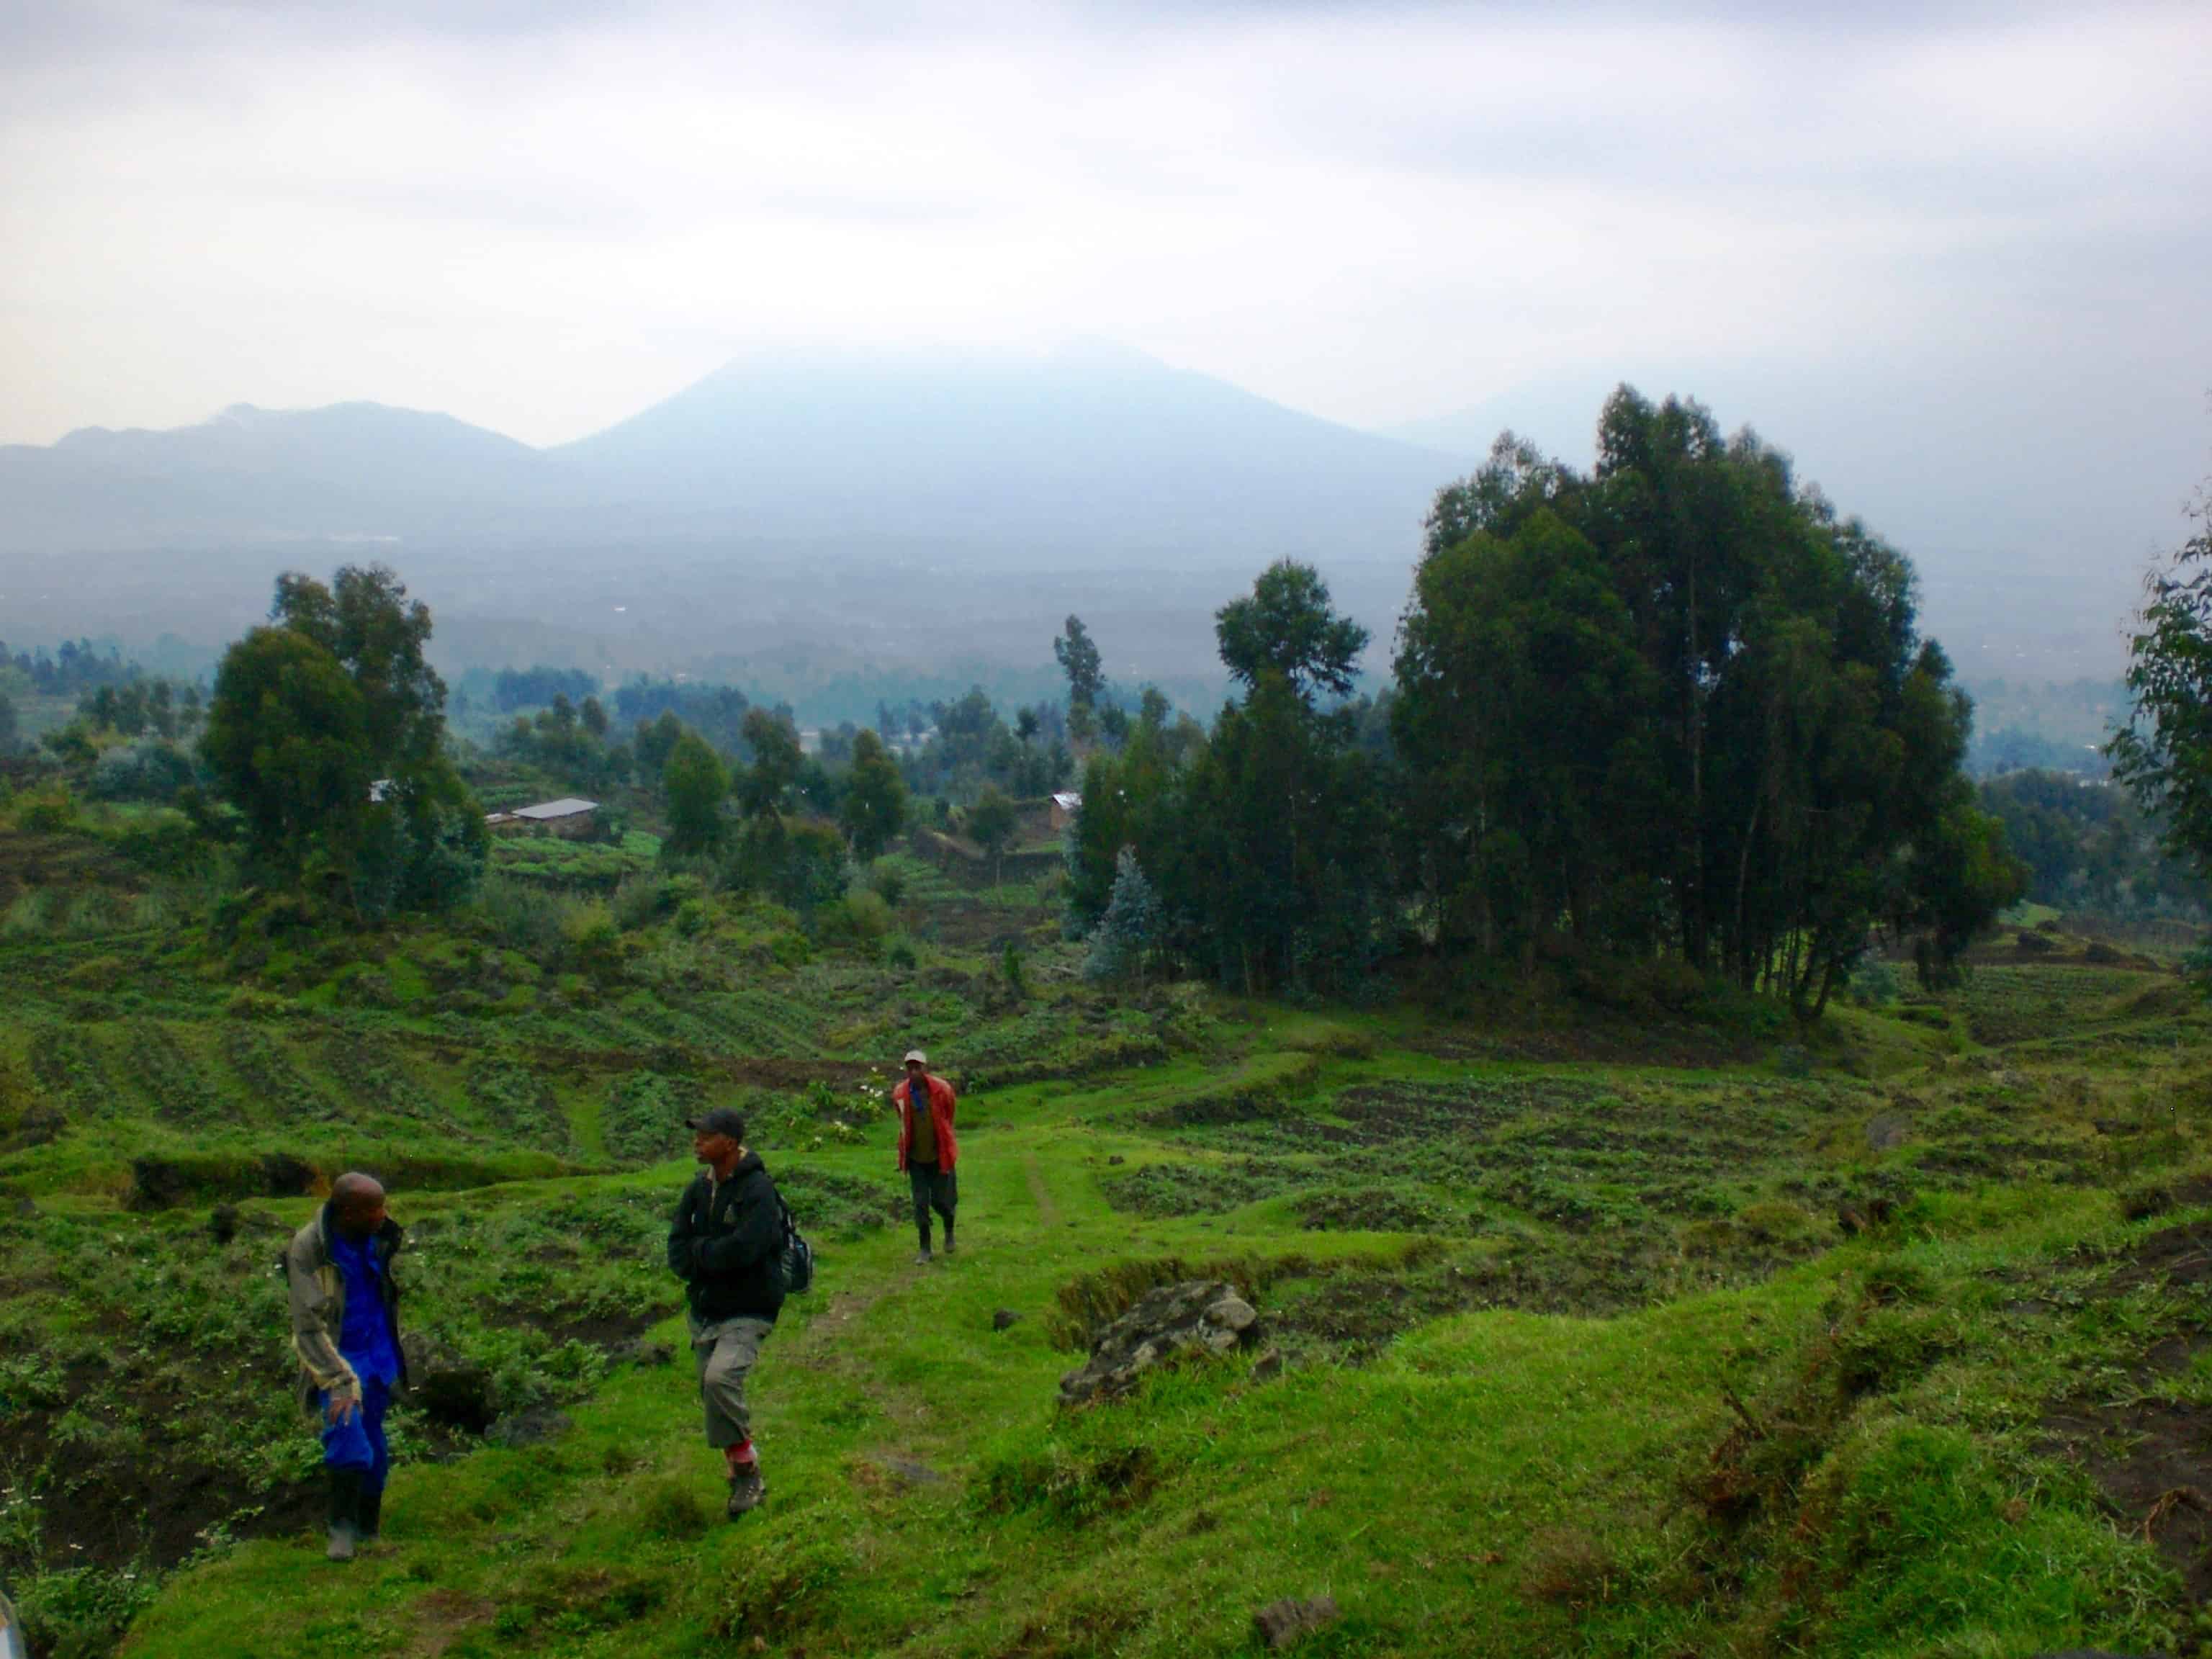 Rwanda gorilla trekking - Views towards the volcanoes of Virunga.